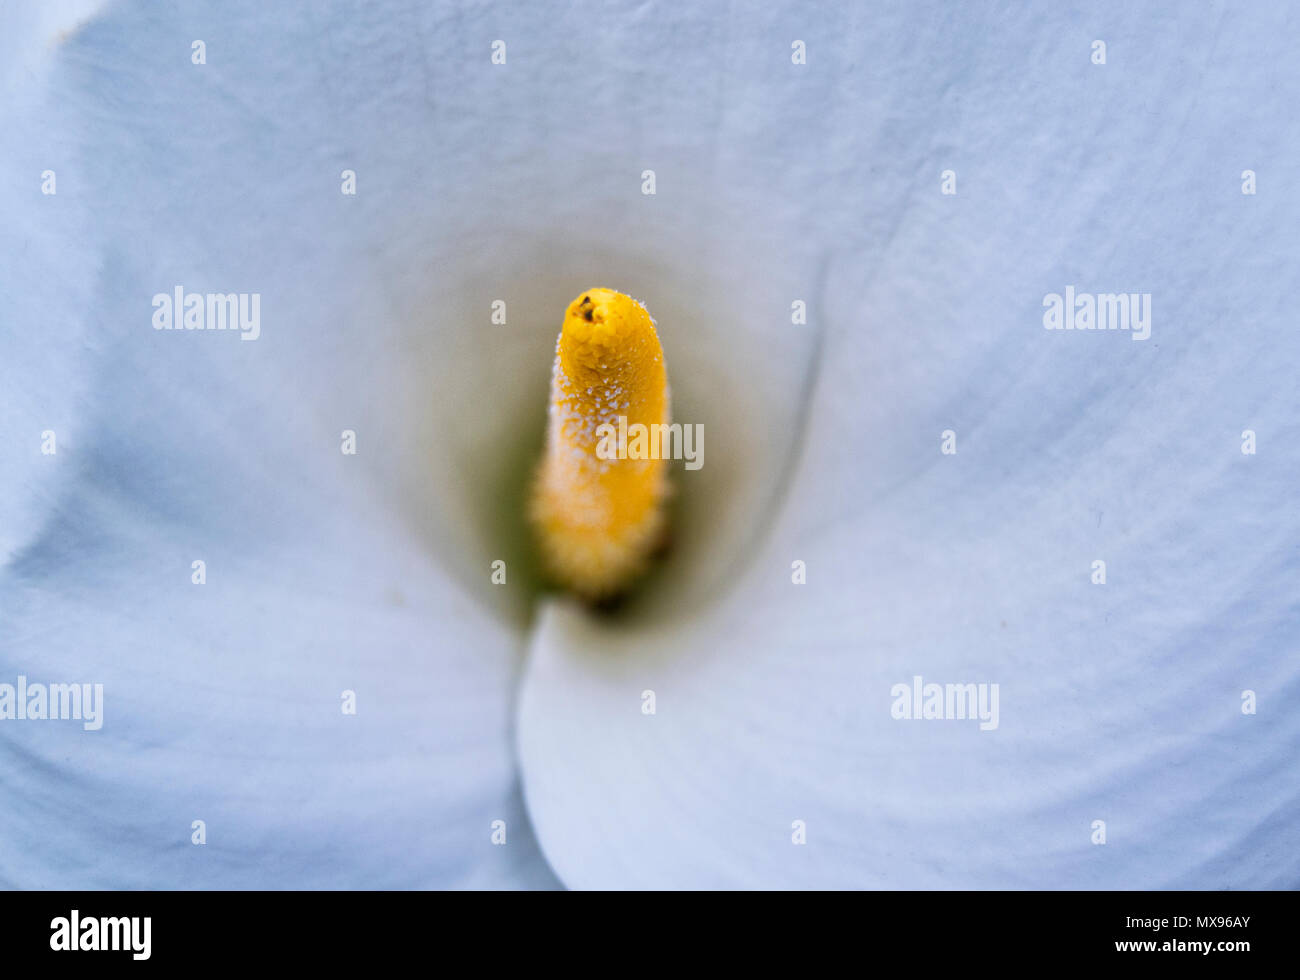 Soft focus de blanc Zantedeschia aethiopica (connu sous le nom de calla lily et) d'arum avec spathe jaune - Araceae, Alismatales Banque D'Images